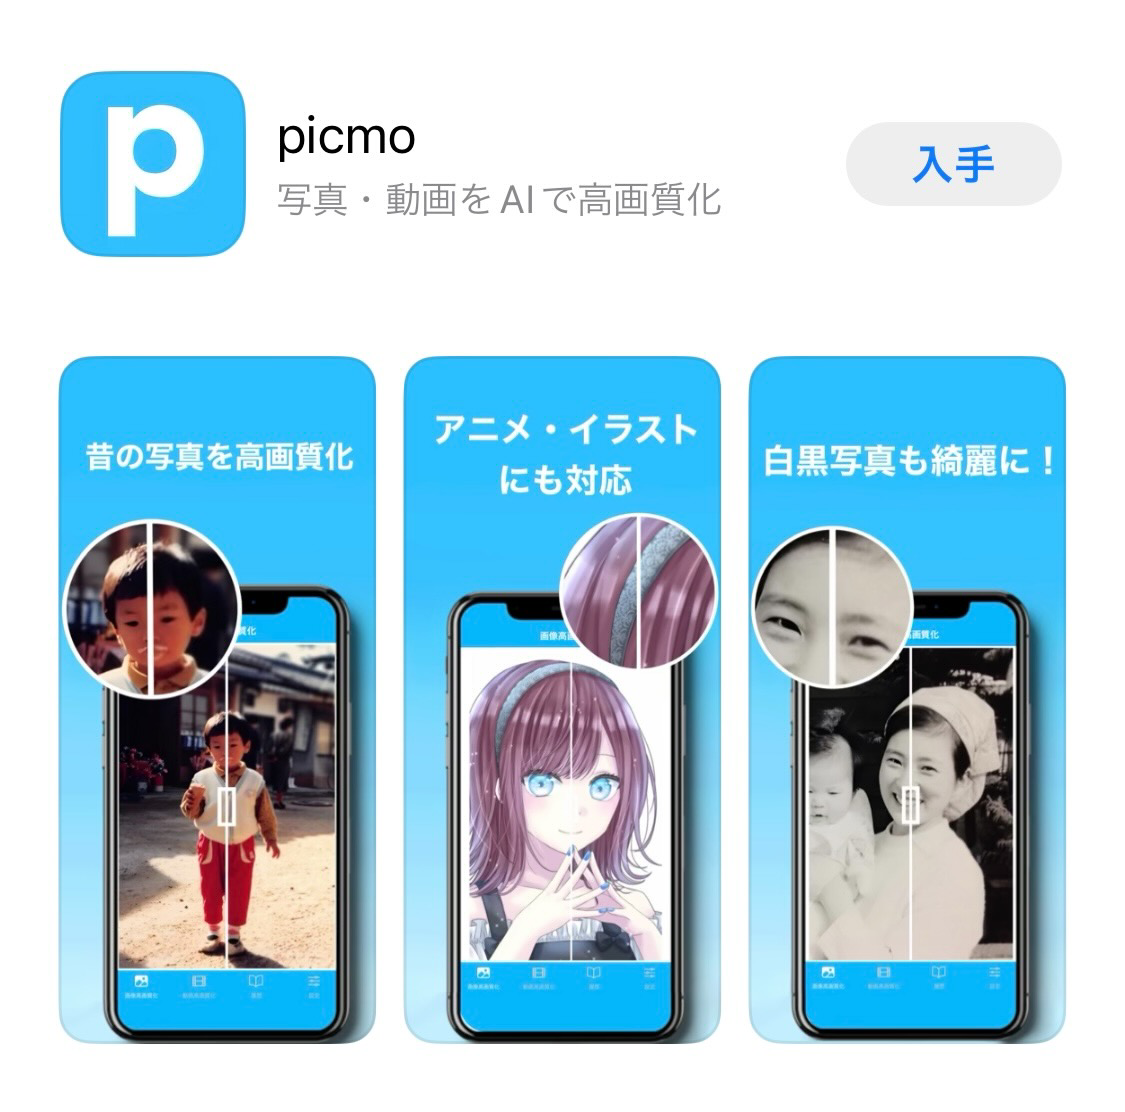 スマホに保存している画像や動画をai技術で高画質化できる無料アプリ Picmo をリリース 昔の写真やイラストを綺麗な画質 で保存できる 株式会社ネクステージのプレスリリース